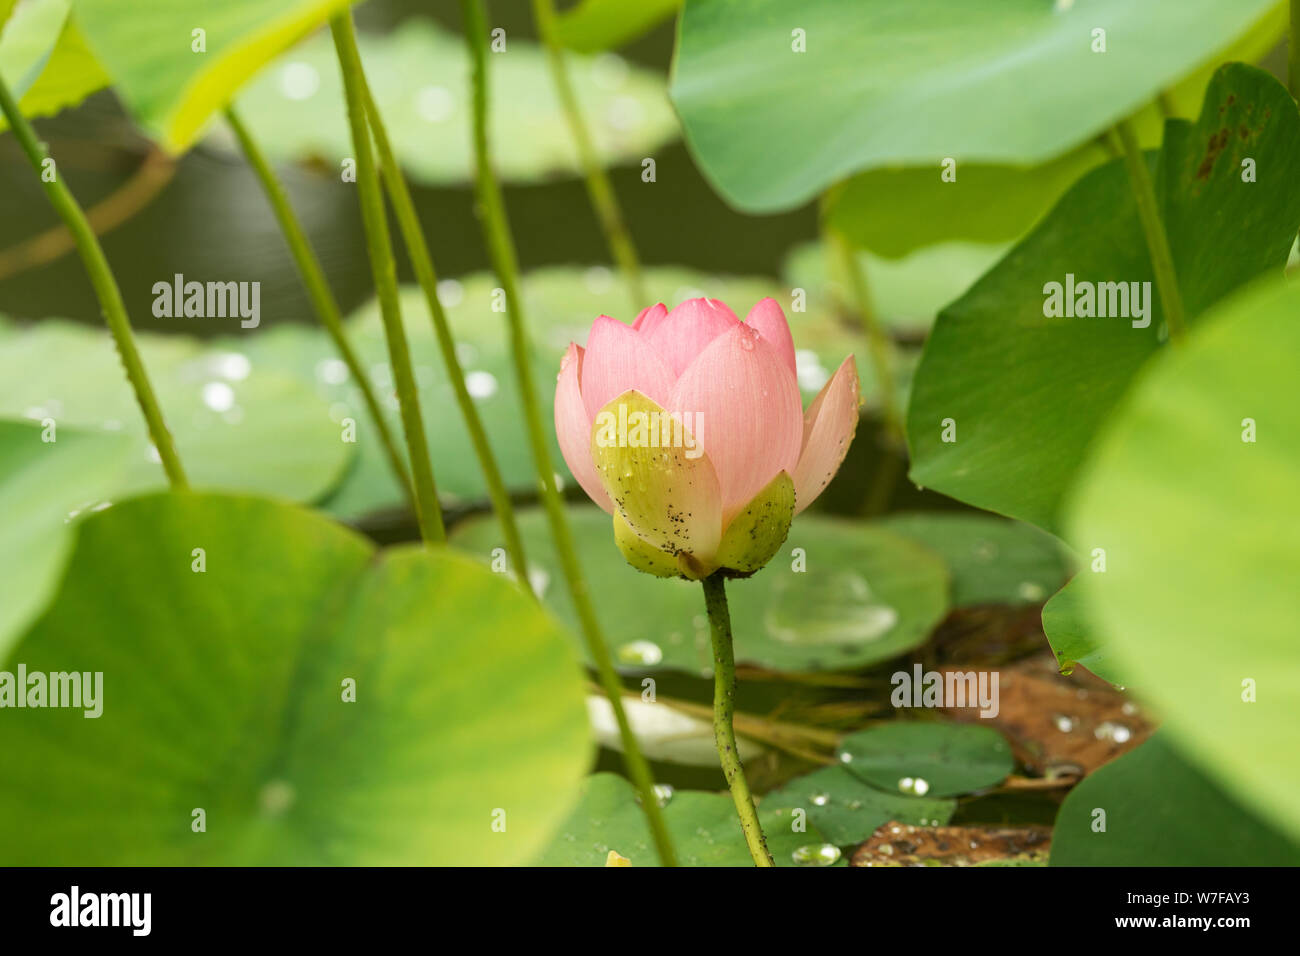 Nelumbo nucifera, conosciuto come loto indiano, loto sacro, fagiolo dell'India, o fagiolo egiziano, fiorente in un giardino d'acqua a Linz, Austria. Foto Stock